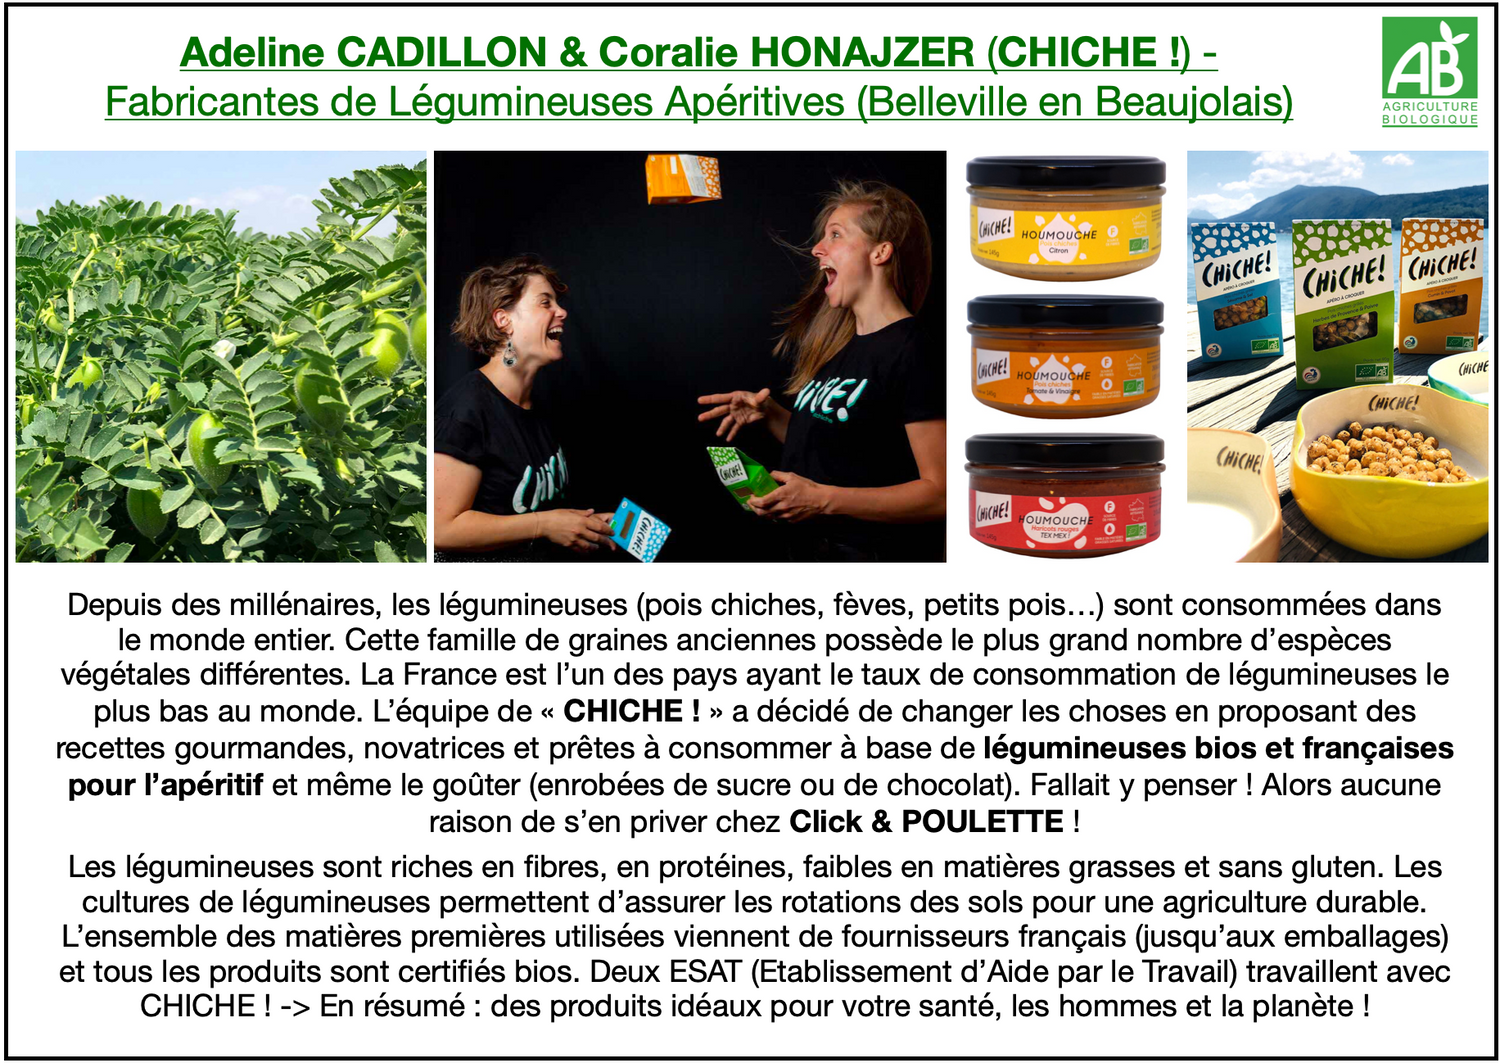 Adeline CADILLON & Coralie HONAJZER (CHICHE !) - Fabricantes de Légumineuses Apéritives (Belleville en Beaujolais). L’équipe de « CHICHE ! » a décidé de proposer des recettes gourmandes, novatrices et prêtes à consommer à base de légumineuses bios et françaises pour l’apéritif et même le goûter (enrobées de sucre ou de chocolat). Click & POULETTE propose toutes les recettes apéritives : petits pois thym & ail, fèves piment d’Espelette & fromage, pois chiche sésame & sel, pois carrés épices italiennes…